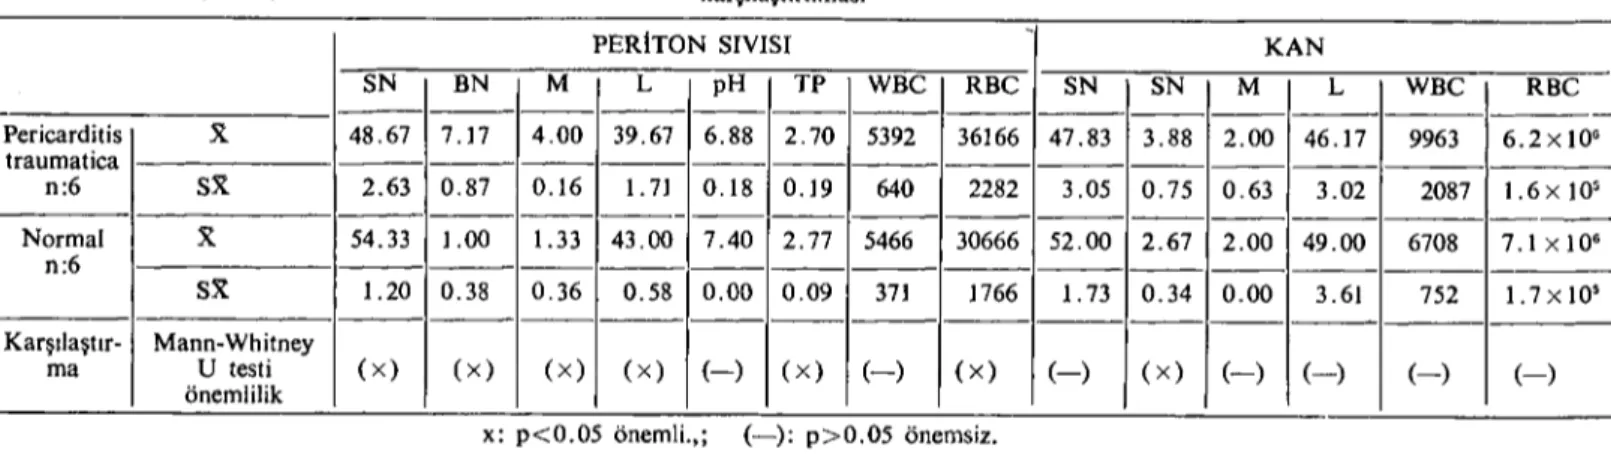 Tablo 2: Gurup II'nin periton sıvısı ve kan örnekleri analizleri sonuçlarının dağılımları ve bunların normal hayvanlarla Mann- Whitney U testi ile karşılaştırılması